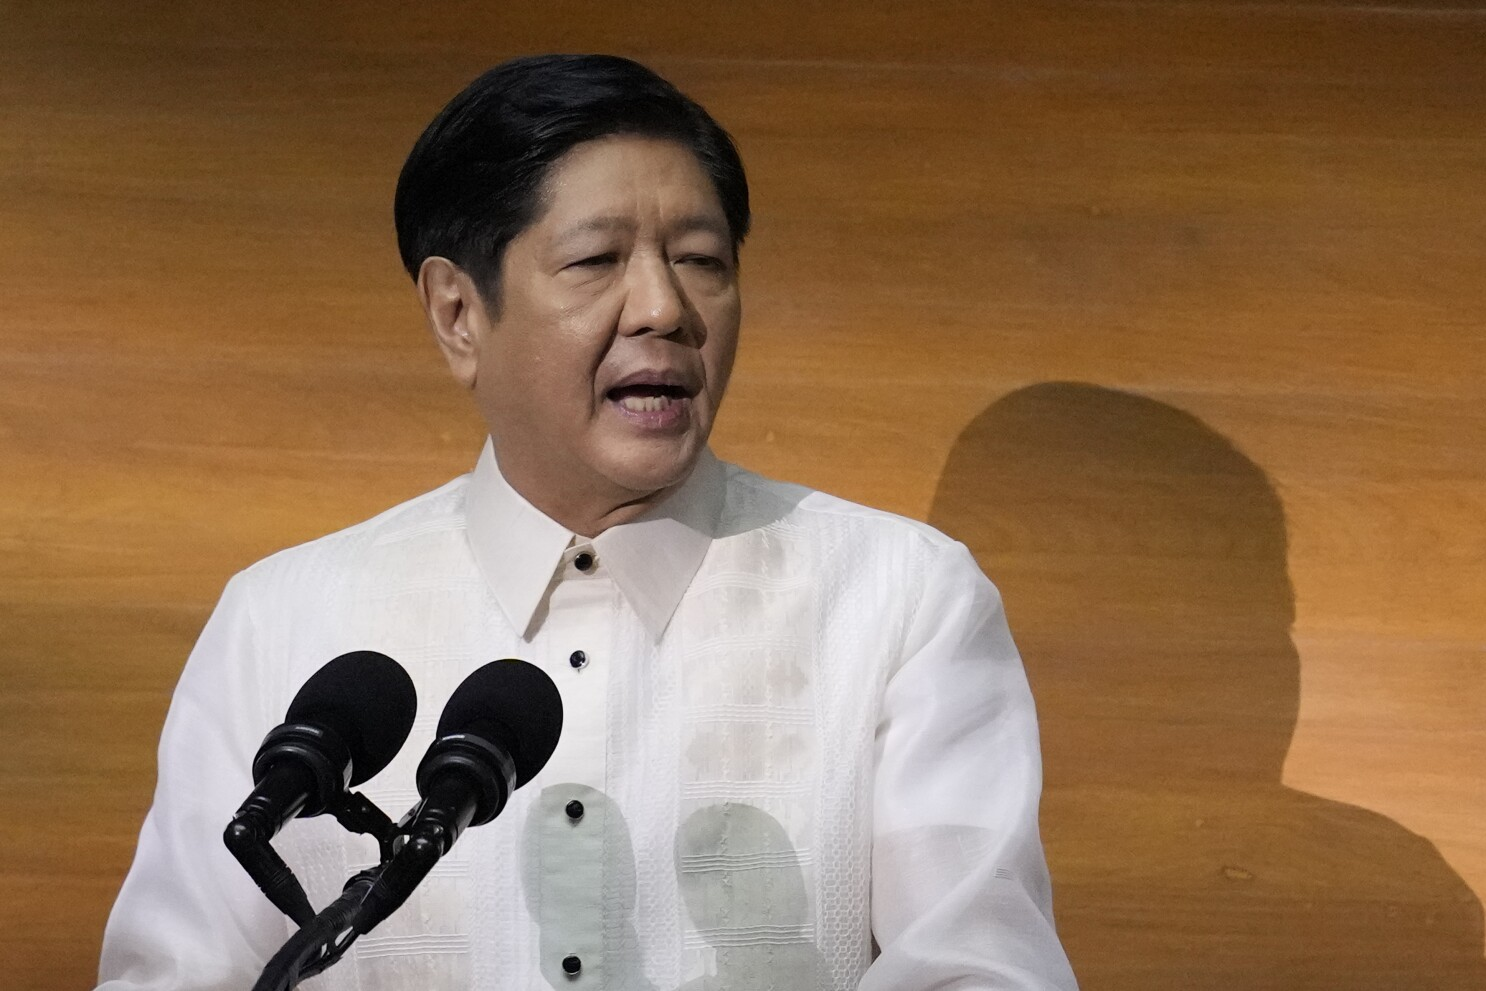 菲律宾总统马科斯发表声明称@小本风说快讯的动态